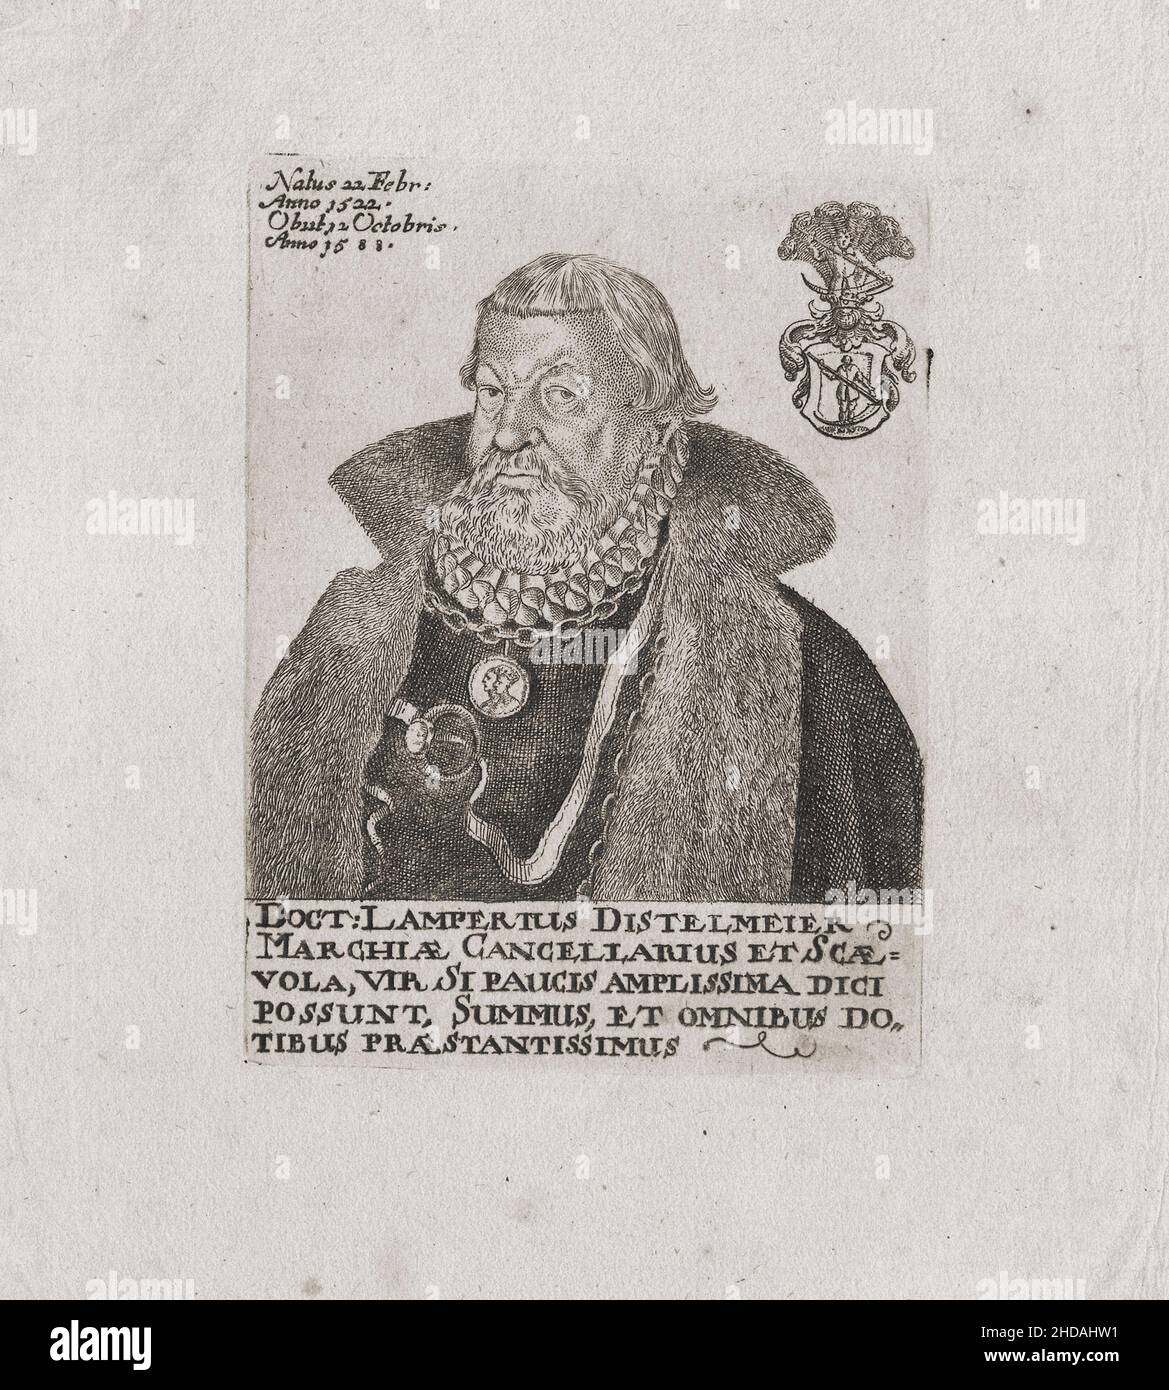 Gravurportrait von Lampert Distelmeyer. 1661 Lampert Distelmeyer, oder Lamprecht Distelmeyer (1522 - 1588) war ein deutscher Jurist und Kanzler von Mark Stockfoto